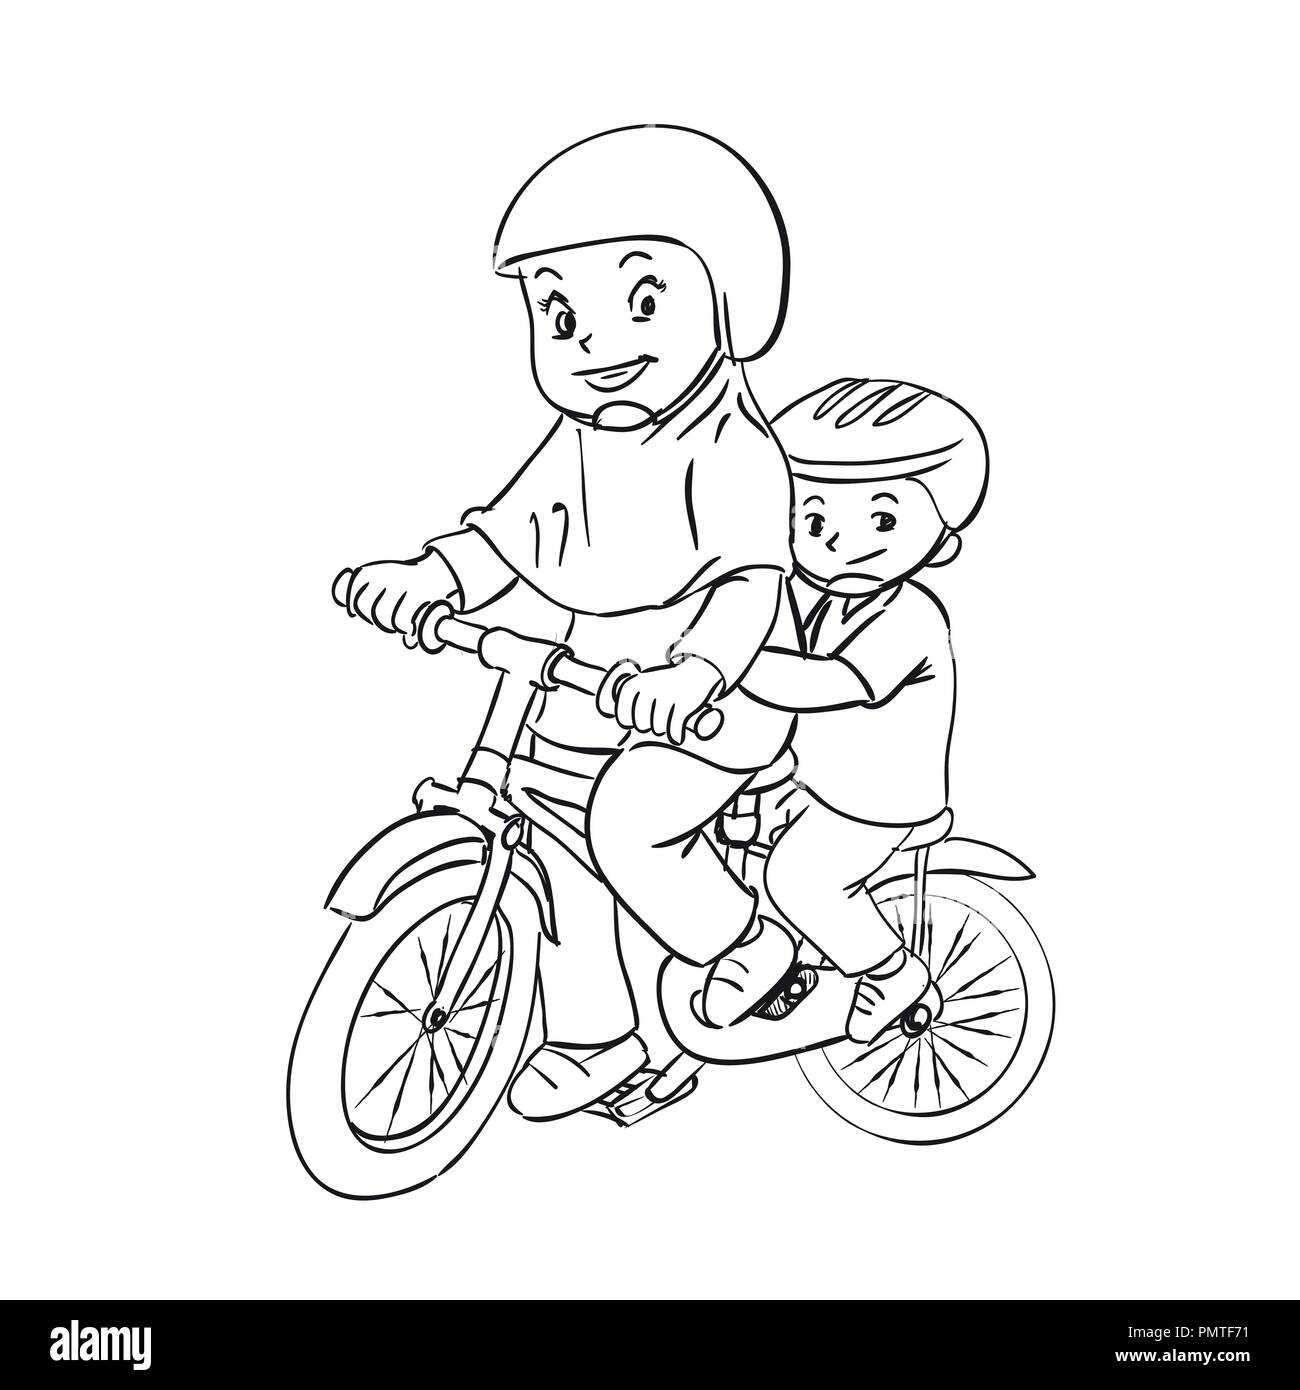 Kinder sind Radfahren Cartoon Illustration, Mädchen und Jungen sind Fahrt Fahrrad, Hand für Malbuch, Bildung Konzept - Vector Illustration gezeichnet. Stock Vektor